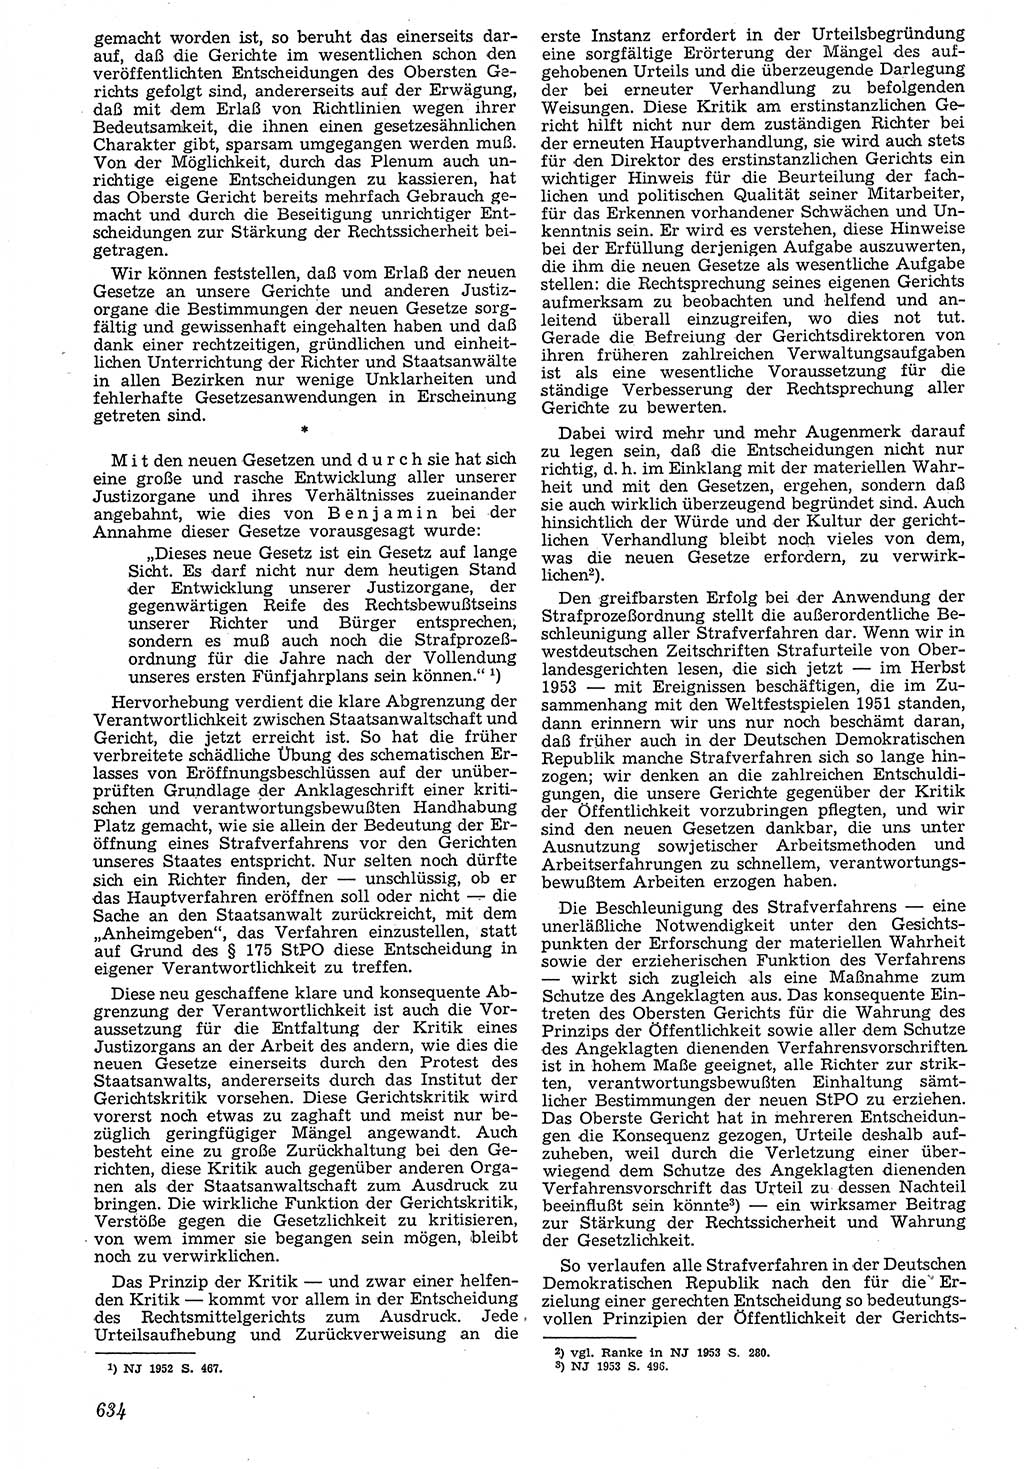 Neue Justiz (NJ), Zeitschrift für Recht und Rechtswissenschaft [Deutsche Demokratische Republik (DDR)], 7. Jahrgang 1953, Seite 634 (NJ DDR 1953, S. 634)